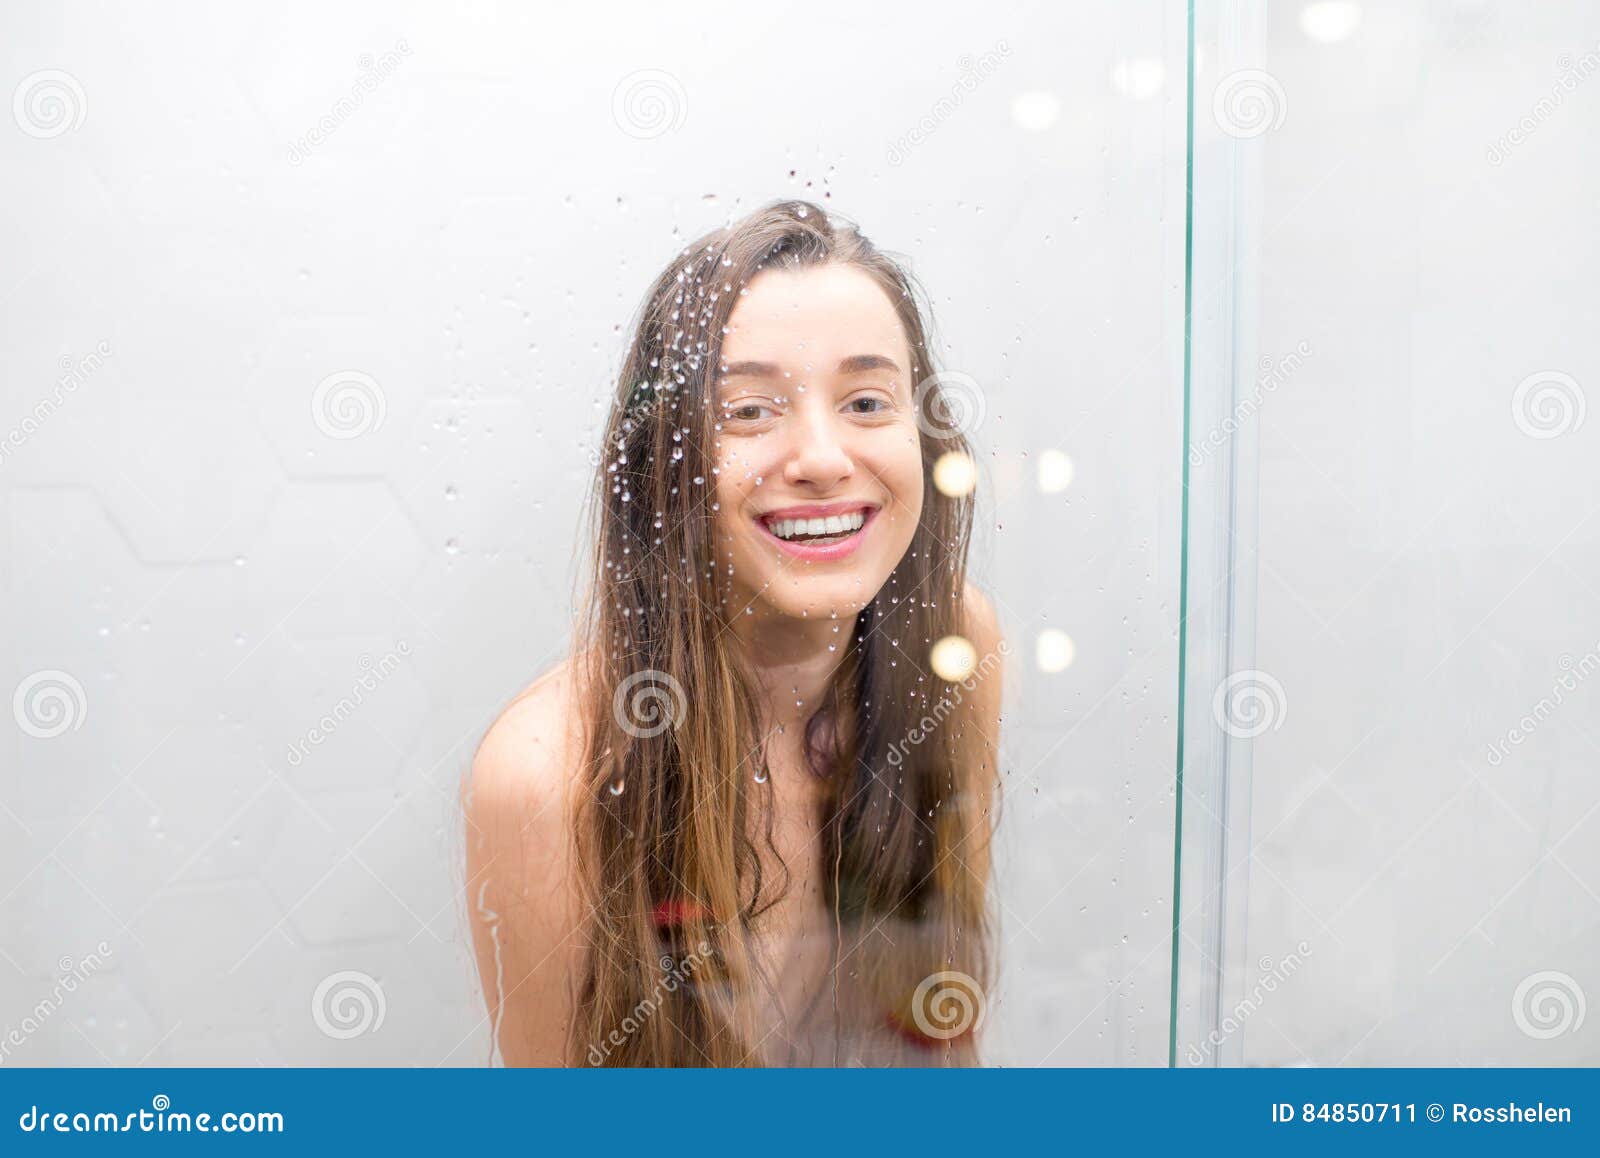 Nude teen in shower